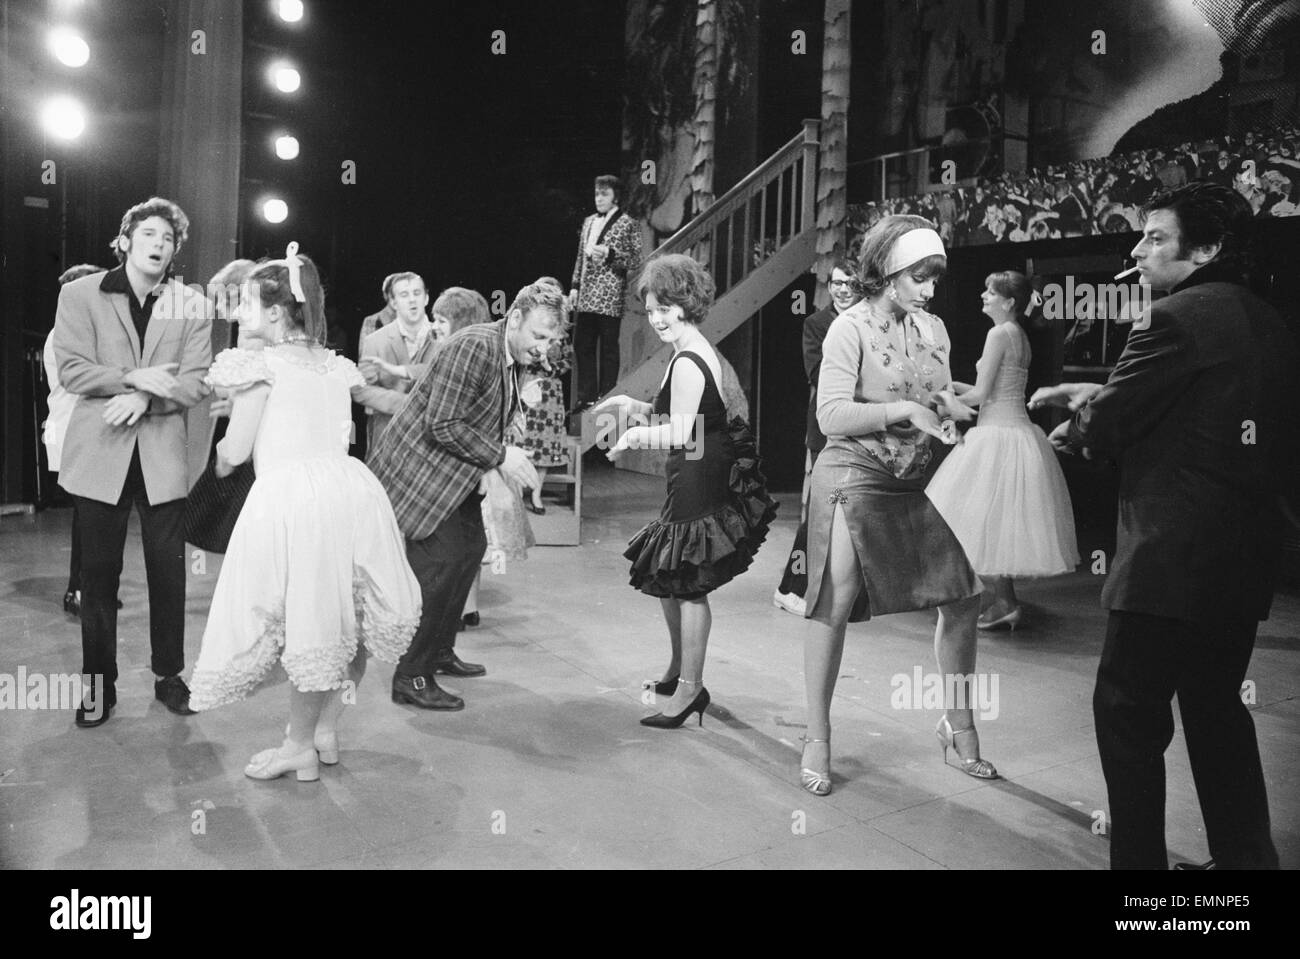 Richard Gere comme Danny Zuko (à gauche) vu ici sur la scène du Théâtre de Coventry pendant une répétition générale pour la graisse. Le spectacle musical situé dans les années 1950 est la tournée des provinces avant d'aller dans le West End de Londres. 30 Mai 1973 Banque D'Images